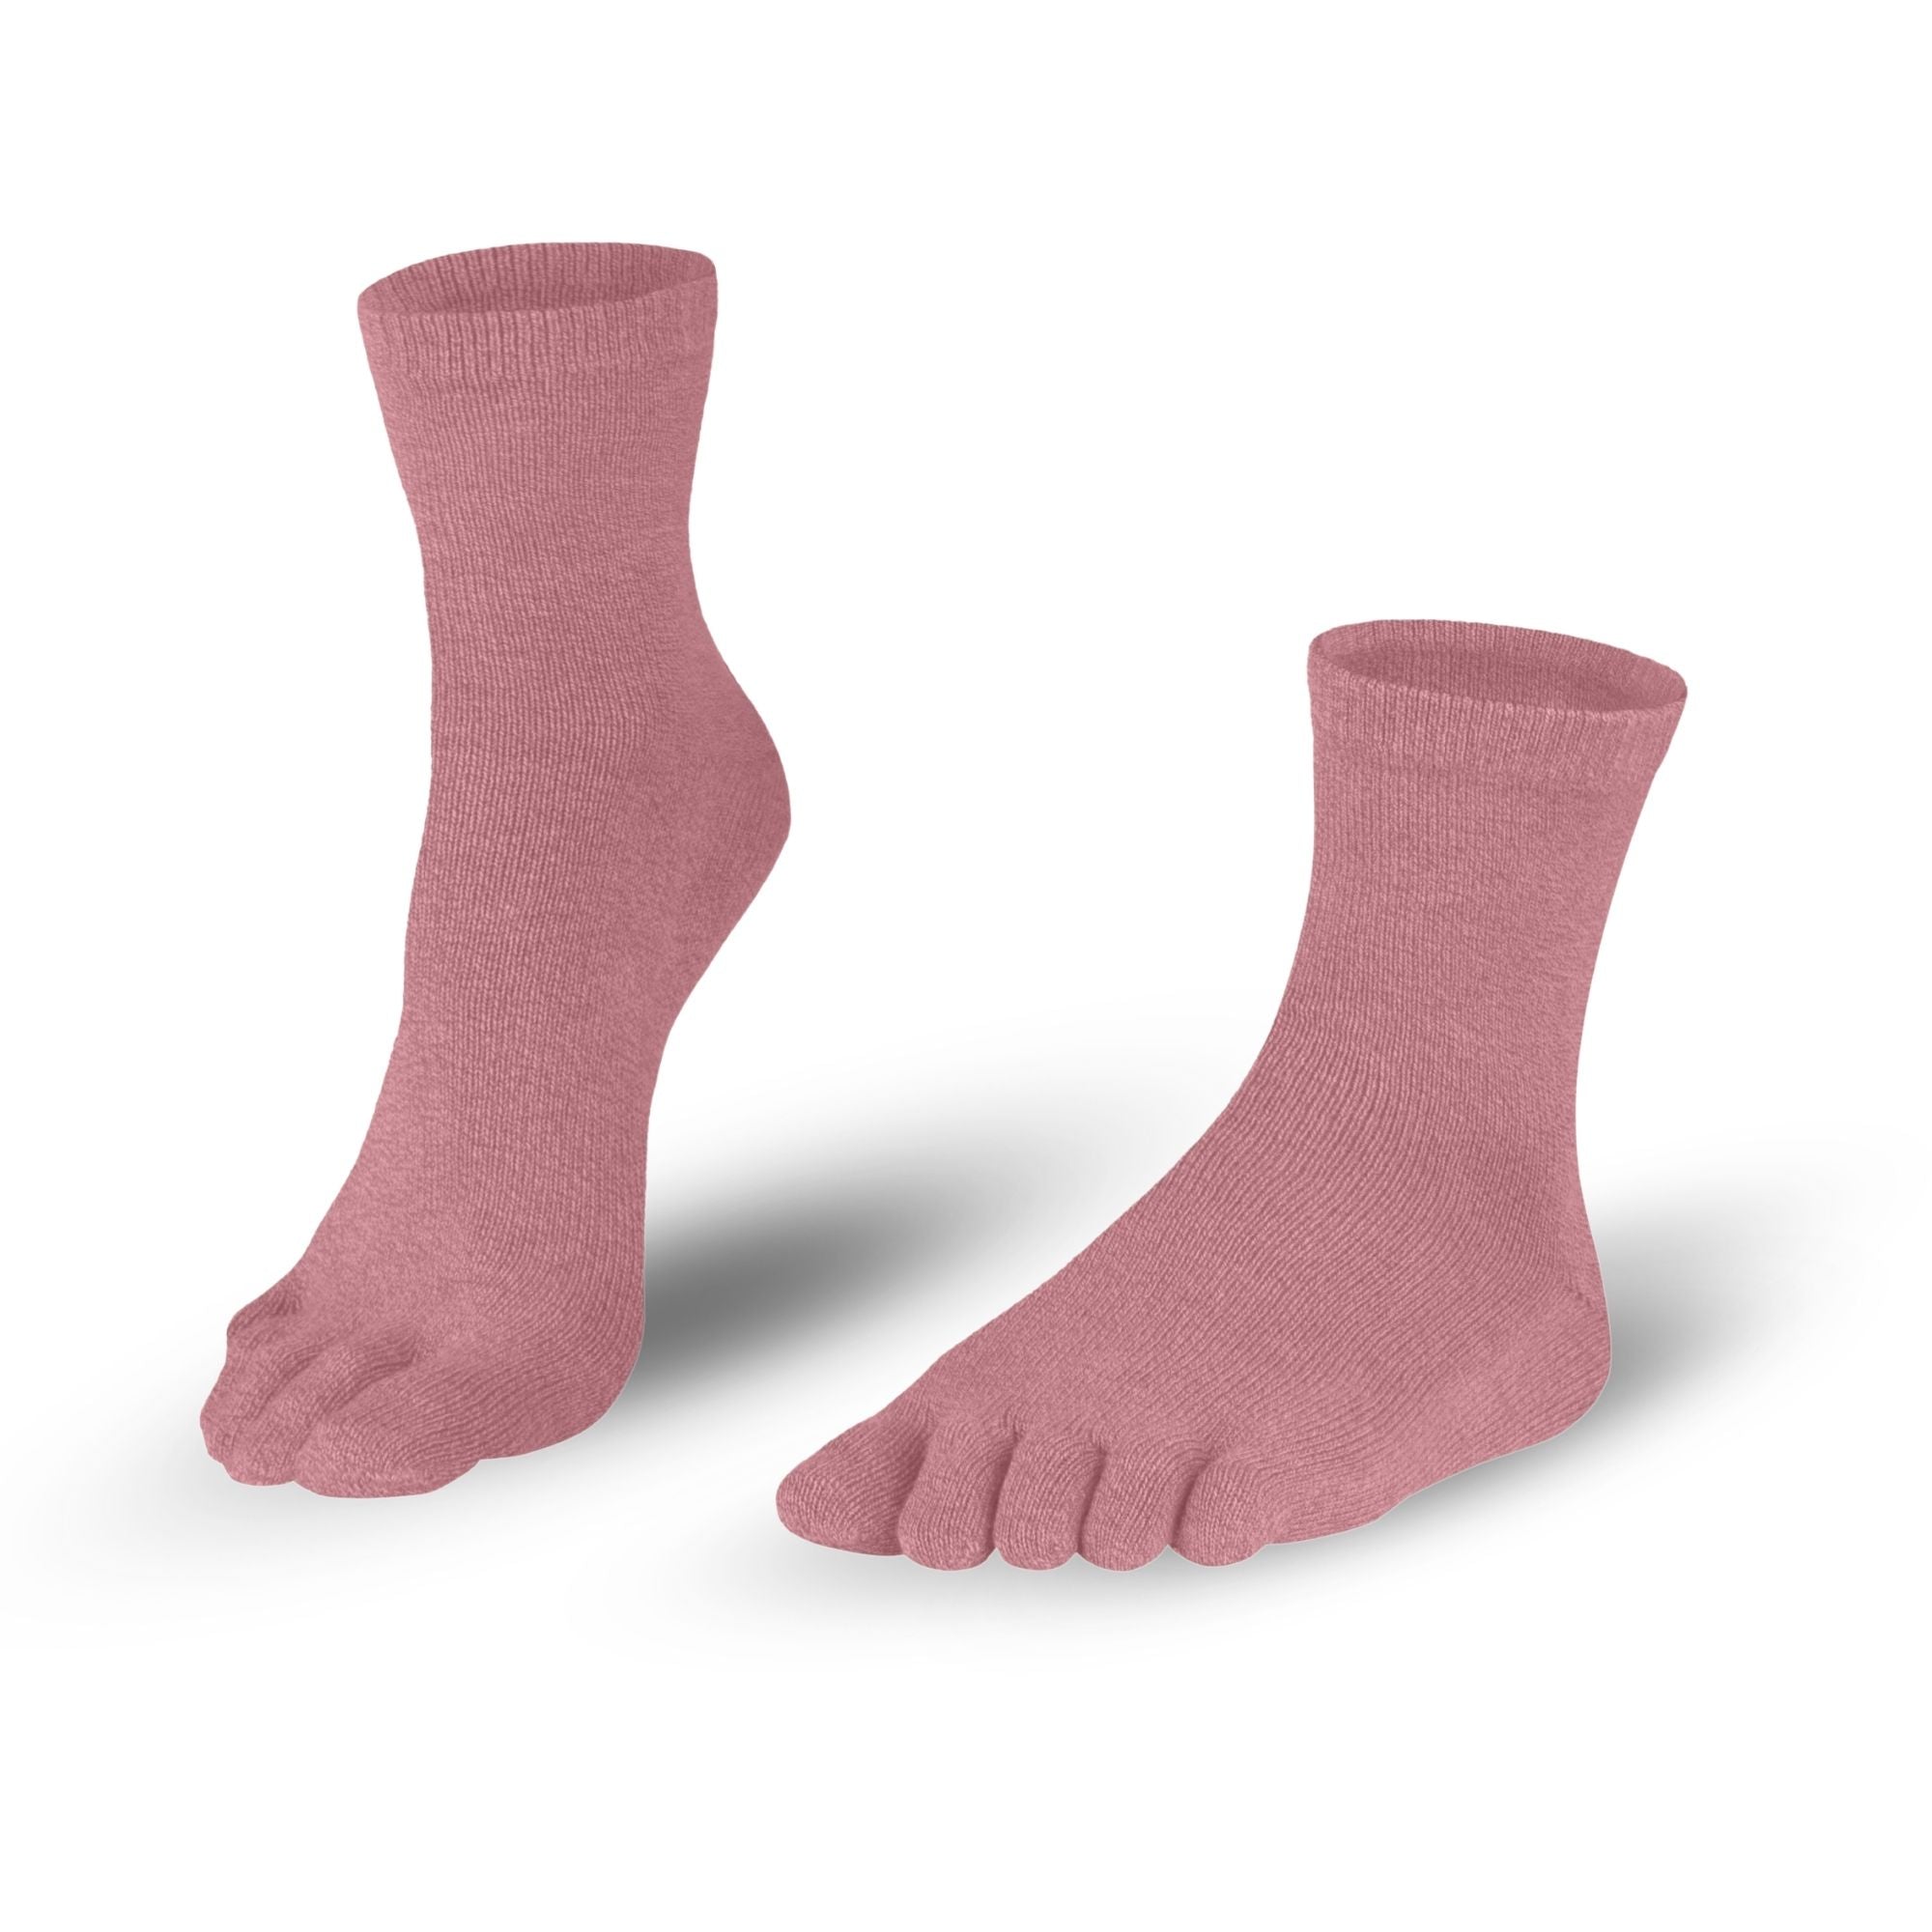 Ladies Cotton Toe Socks in Pink